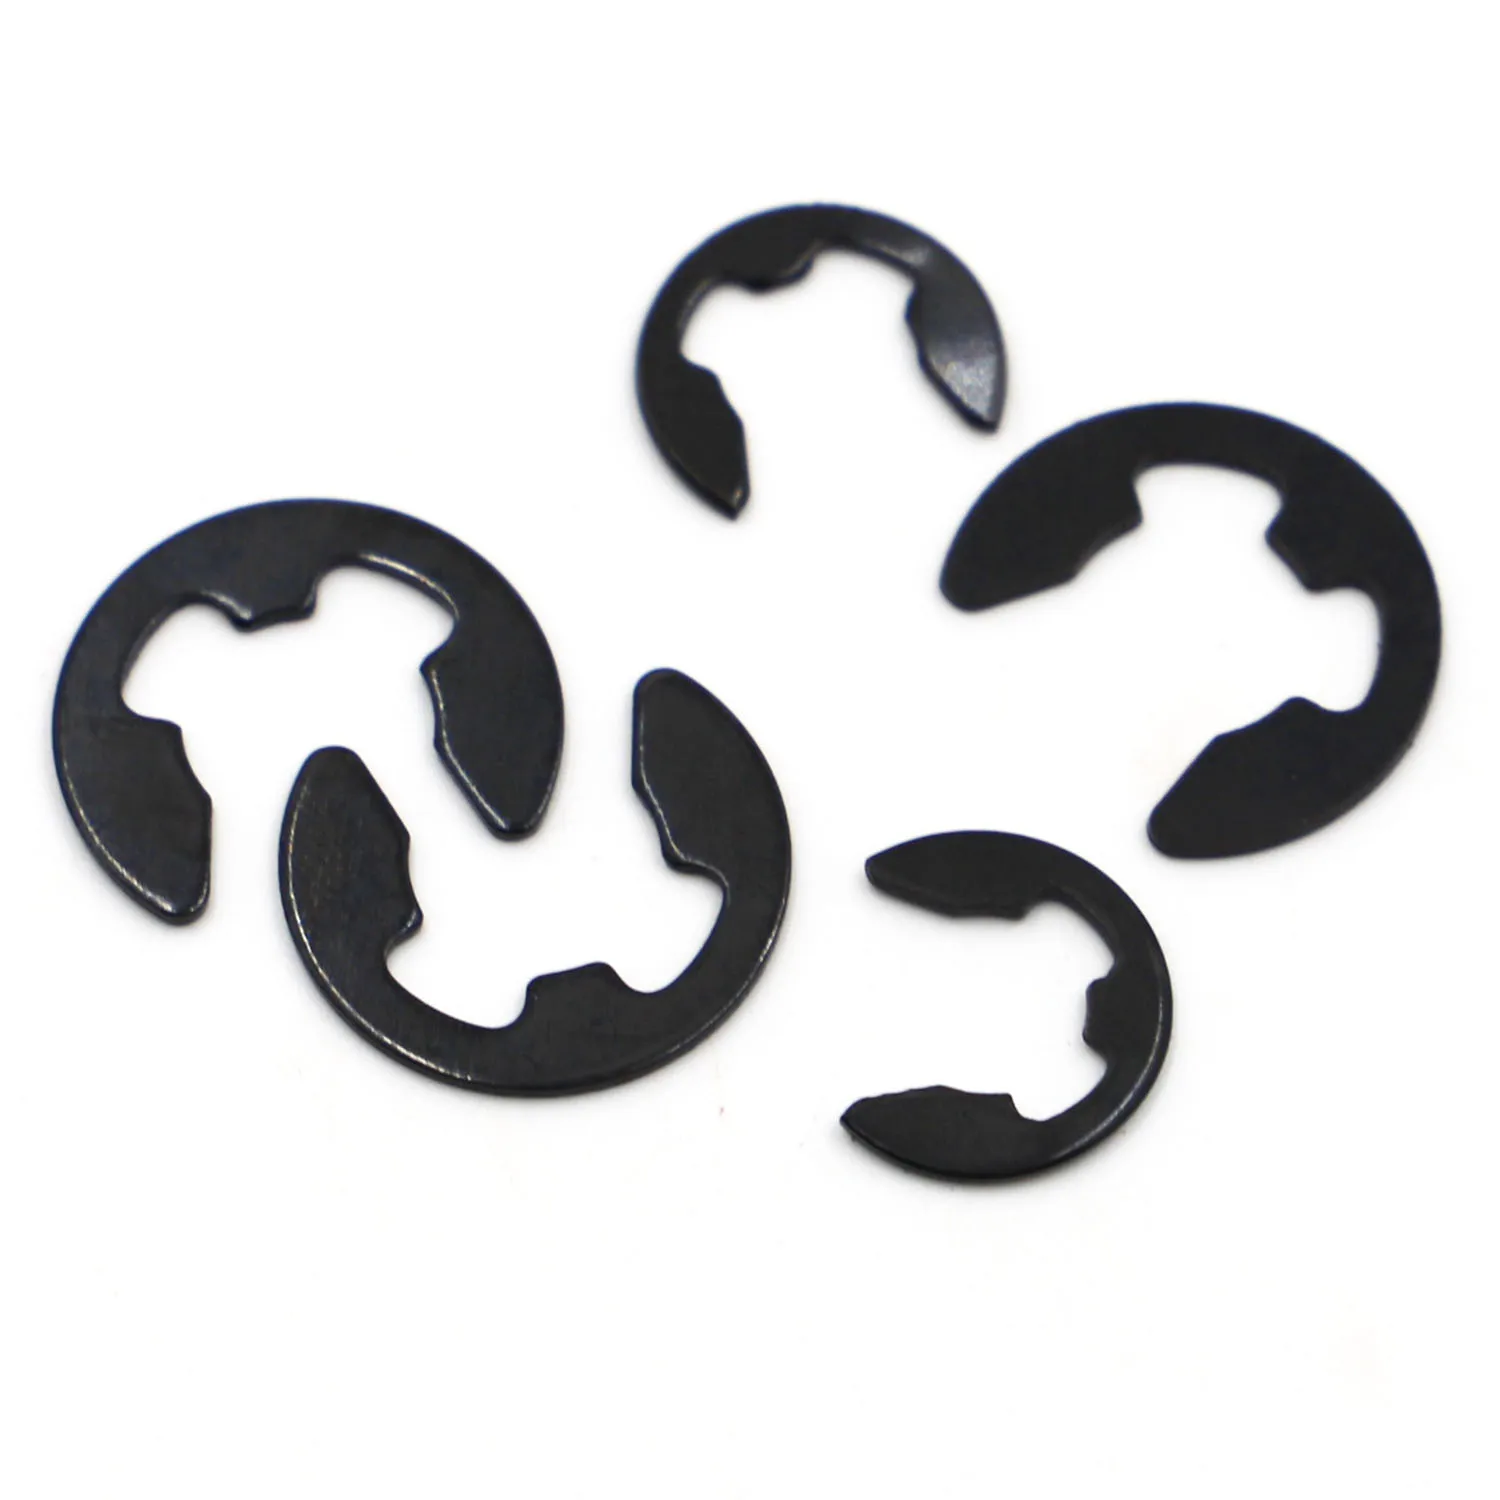 

M1.2 M1.5 M2 M3 M4 - M24 GB896 Black Manganese Steel Shaft Bearing Retaining Ring Split Washer Snap Collar E Type Clip Circlip